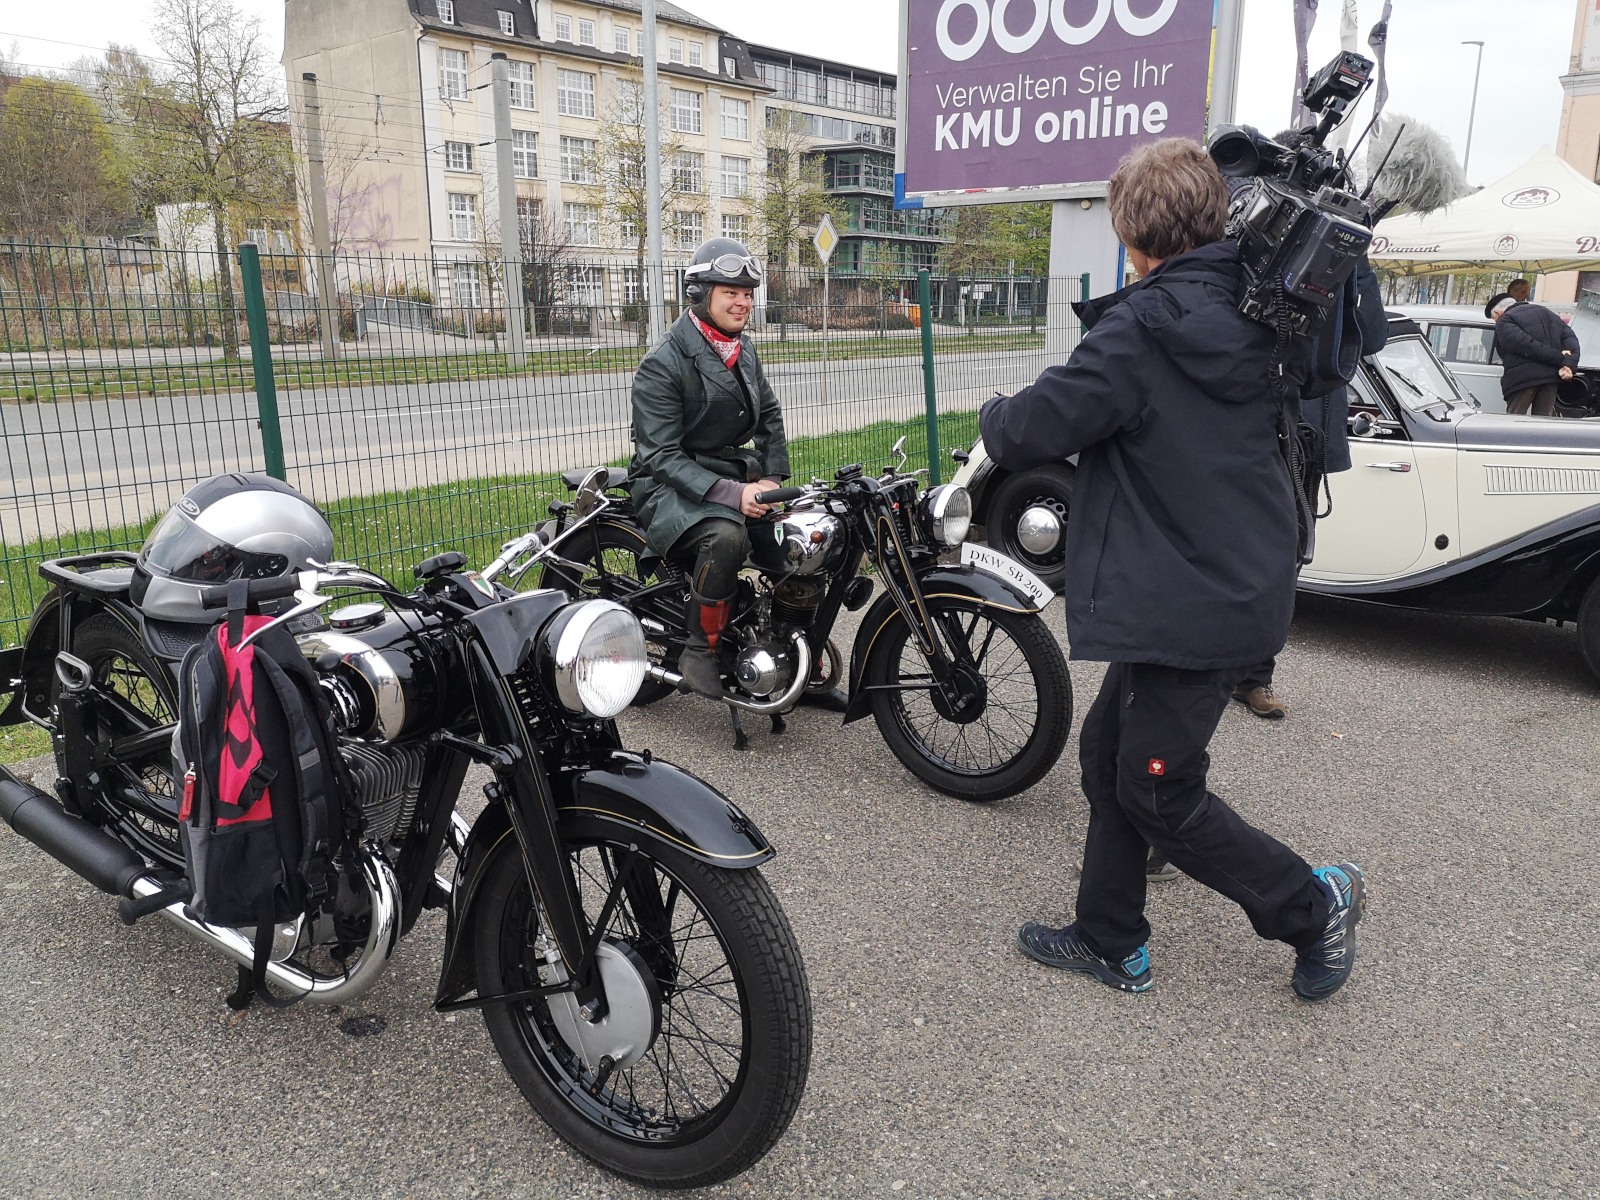 Zwei Motorräder und ein Kameramann